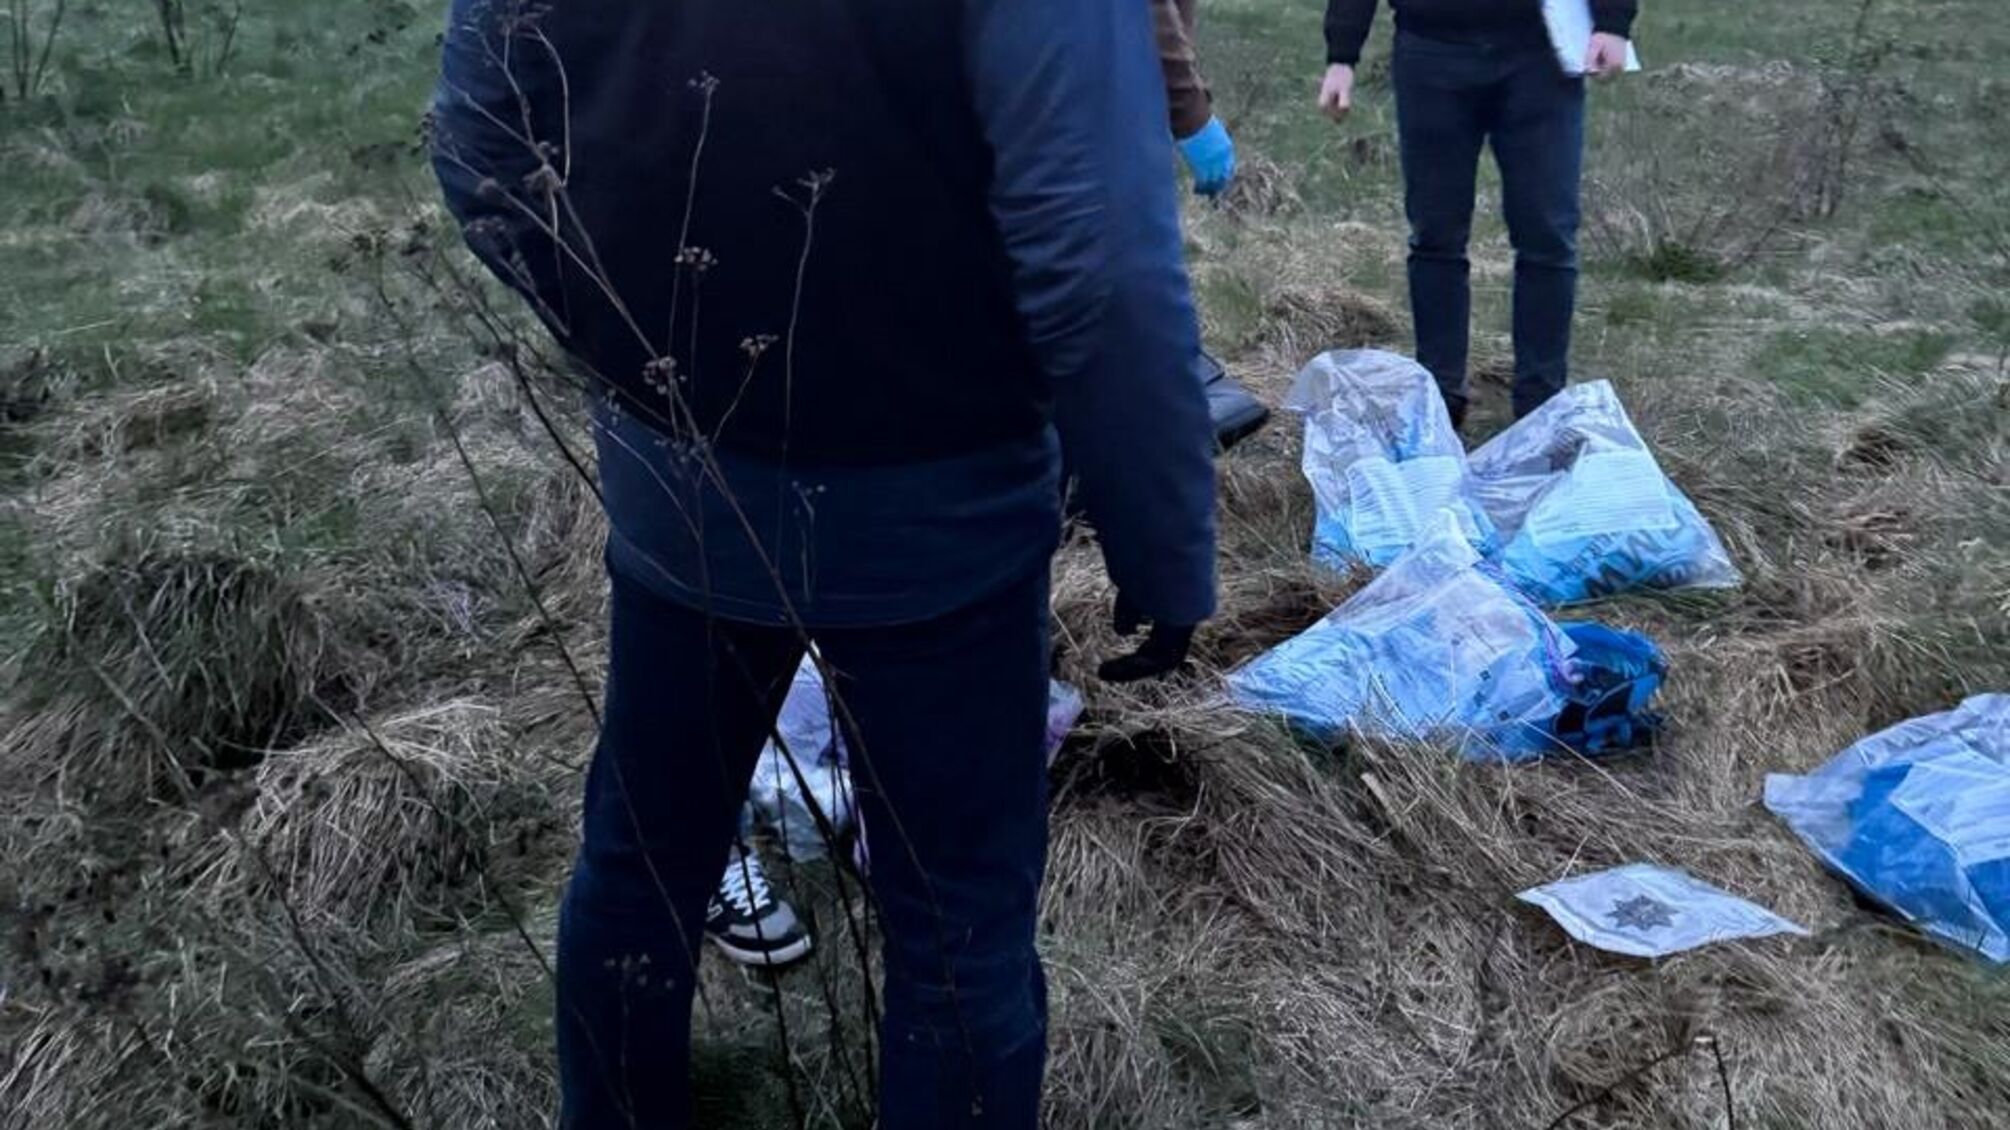 Изъяли амфетамина на 25 млн грн - в Прикарпатье полицейские задержали наркогруппировку